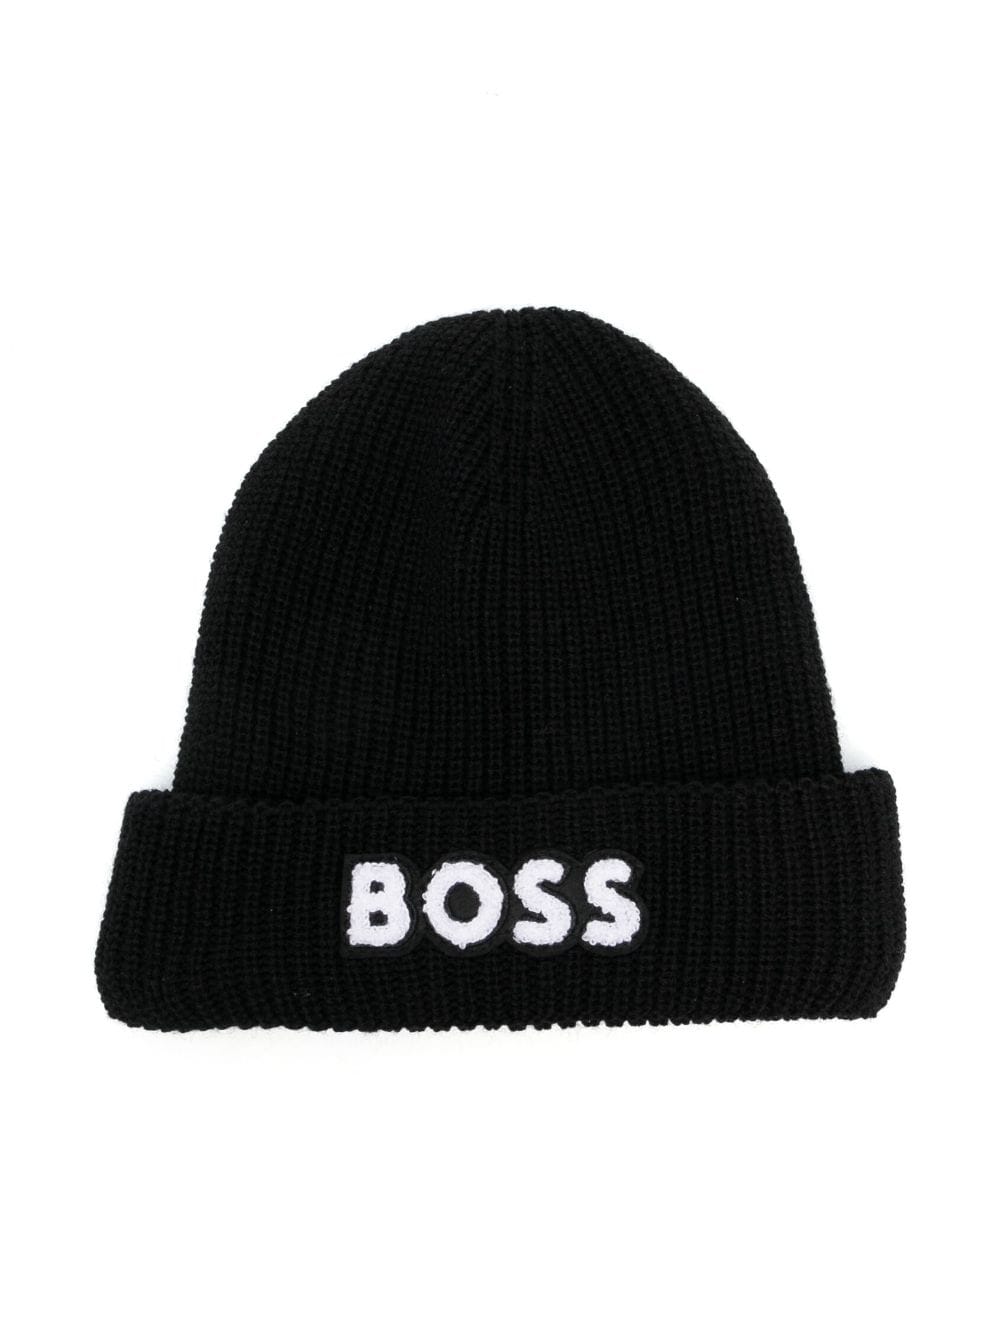 BOSS Kidswear embroidered-logo beanie hat - Black von BOSS Kidswear